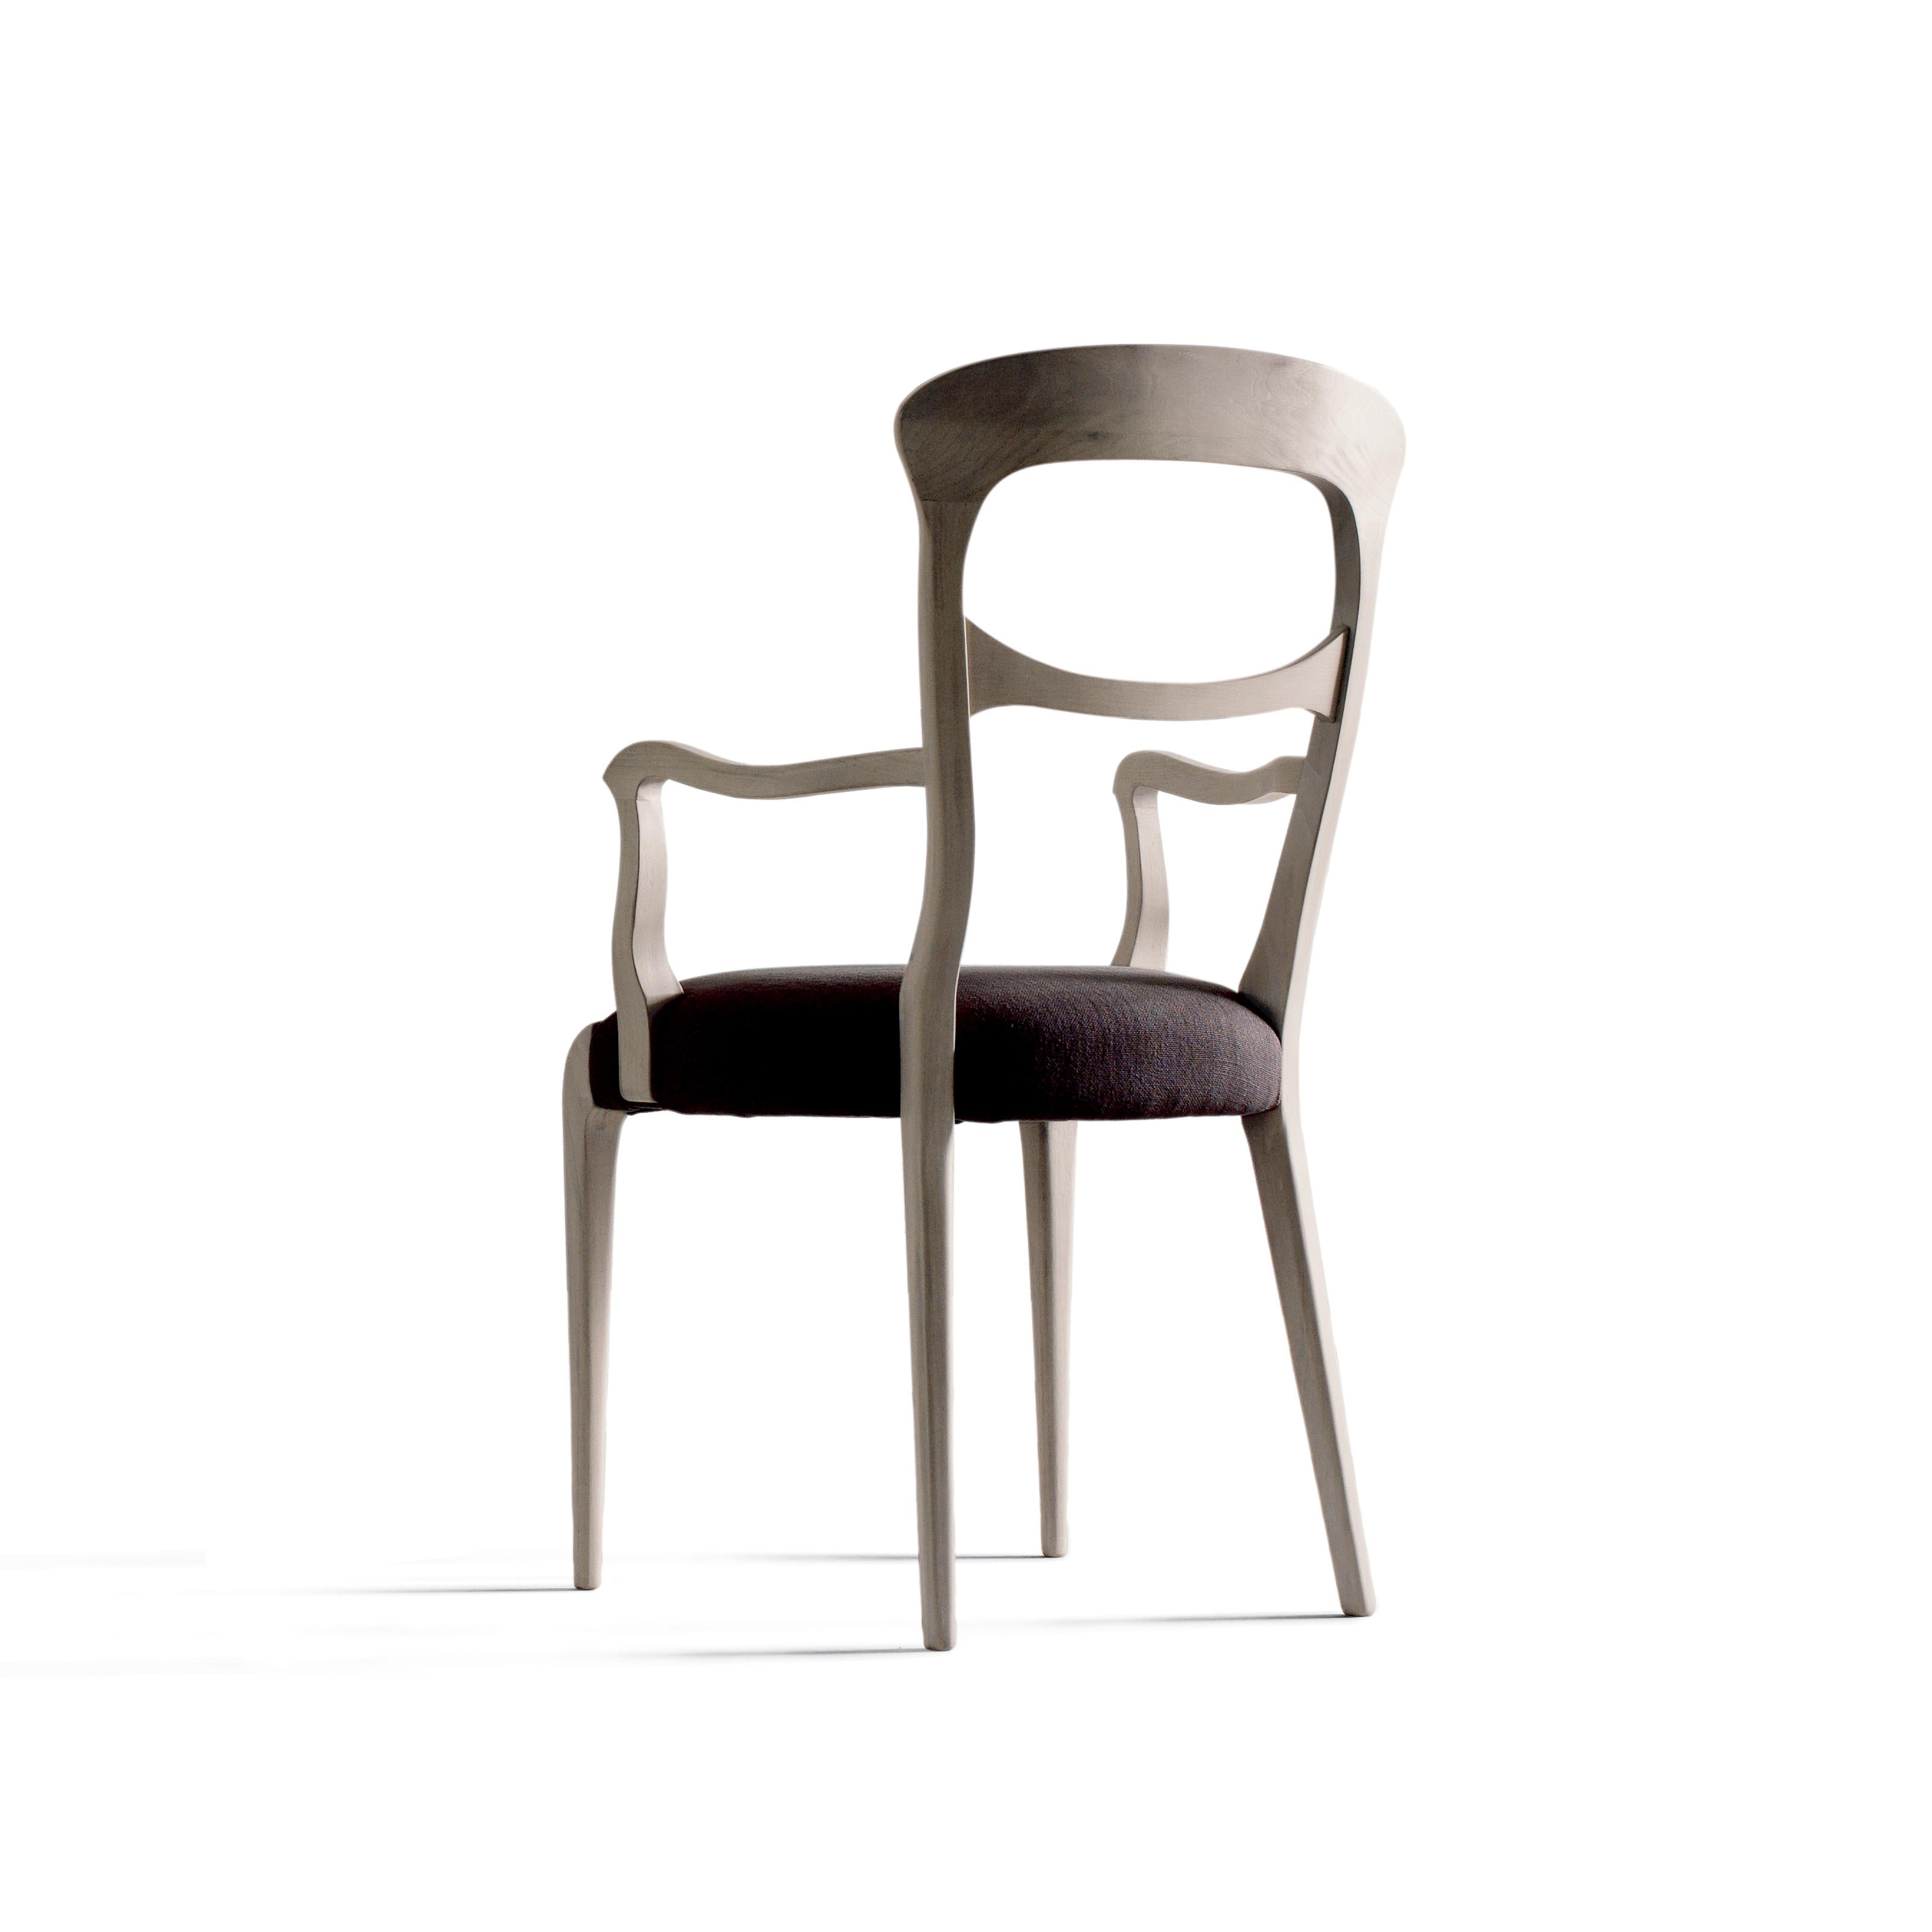 La chaise en bois massif Capotavola incarne l'élégance raffinée du design italien. Fabriqué à la main en Italie, il présente une structure en noyer canaletto massif avec une finition acrylique et une doublure en cuir ou en tissu de qualité